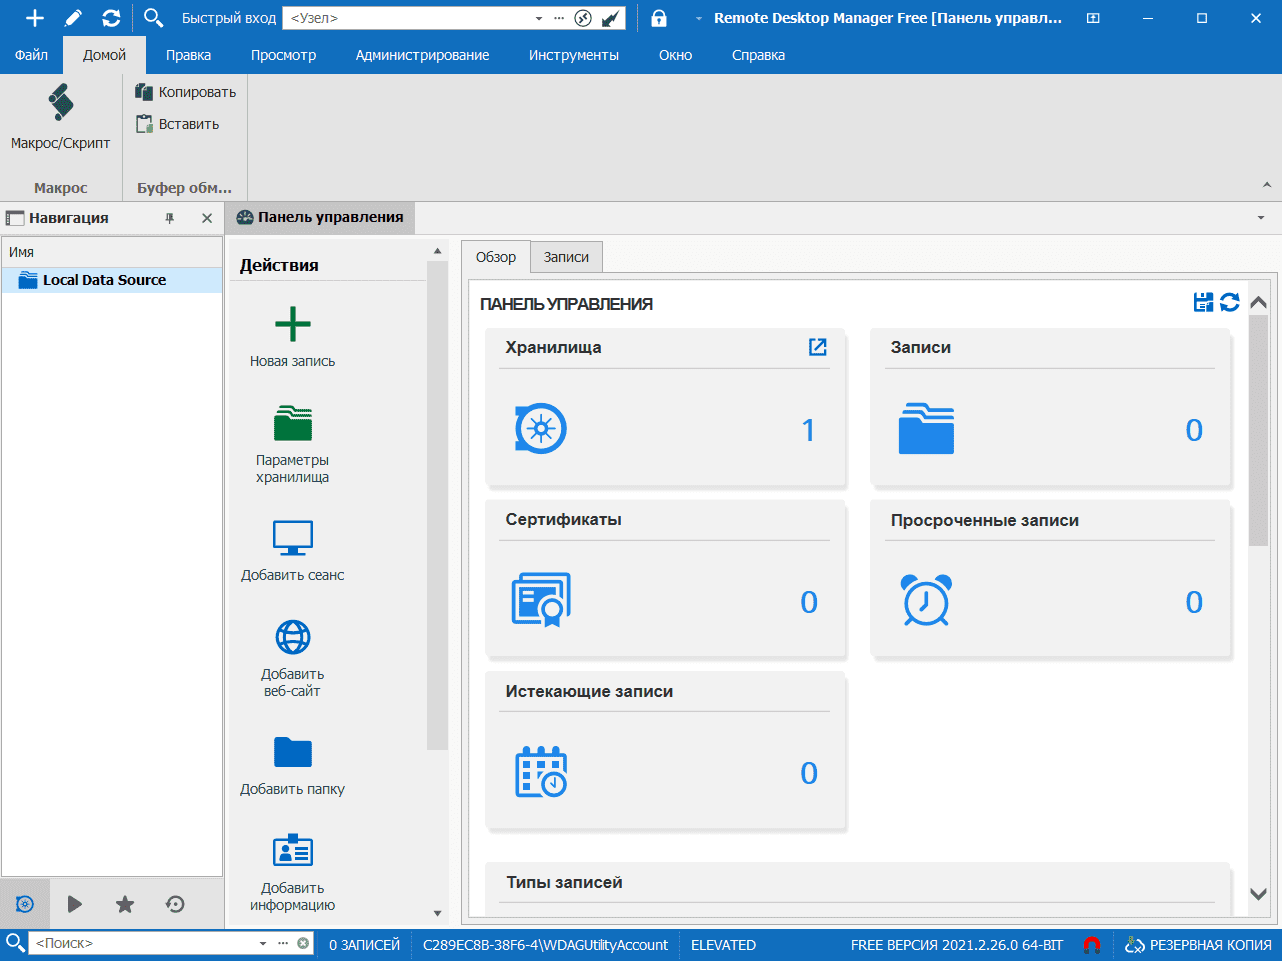 remote desktop software download